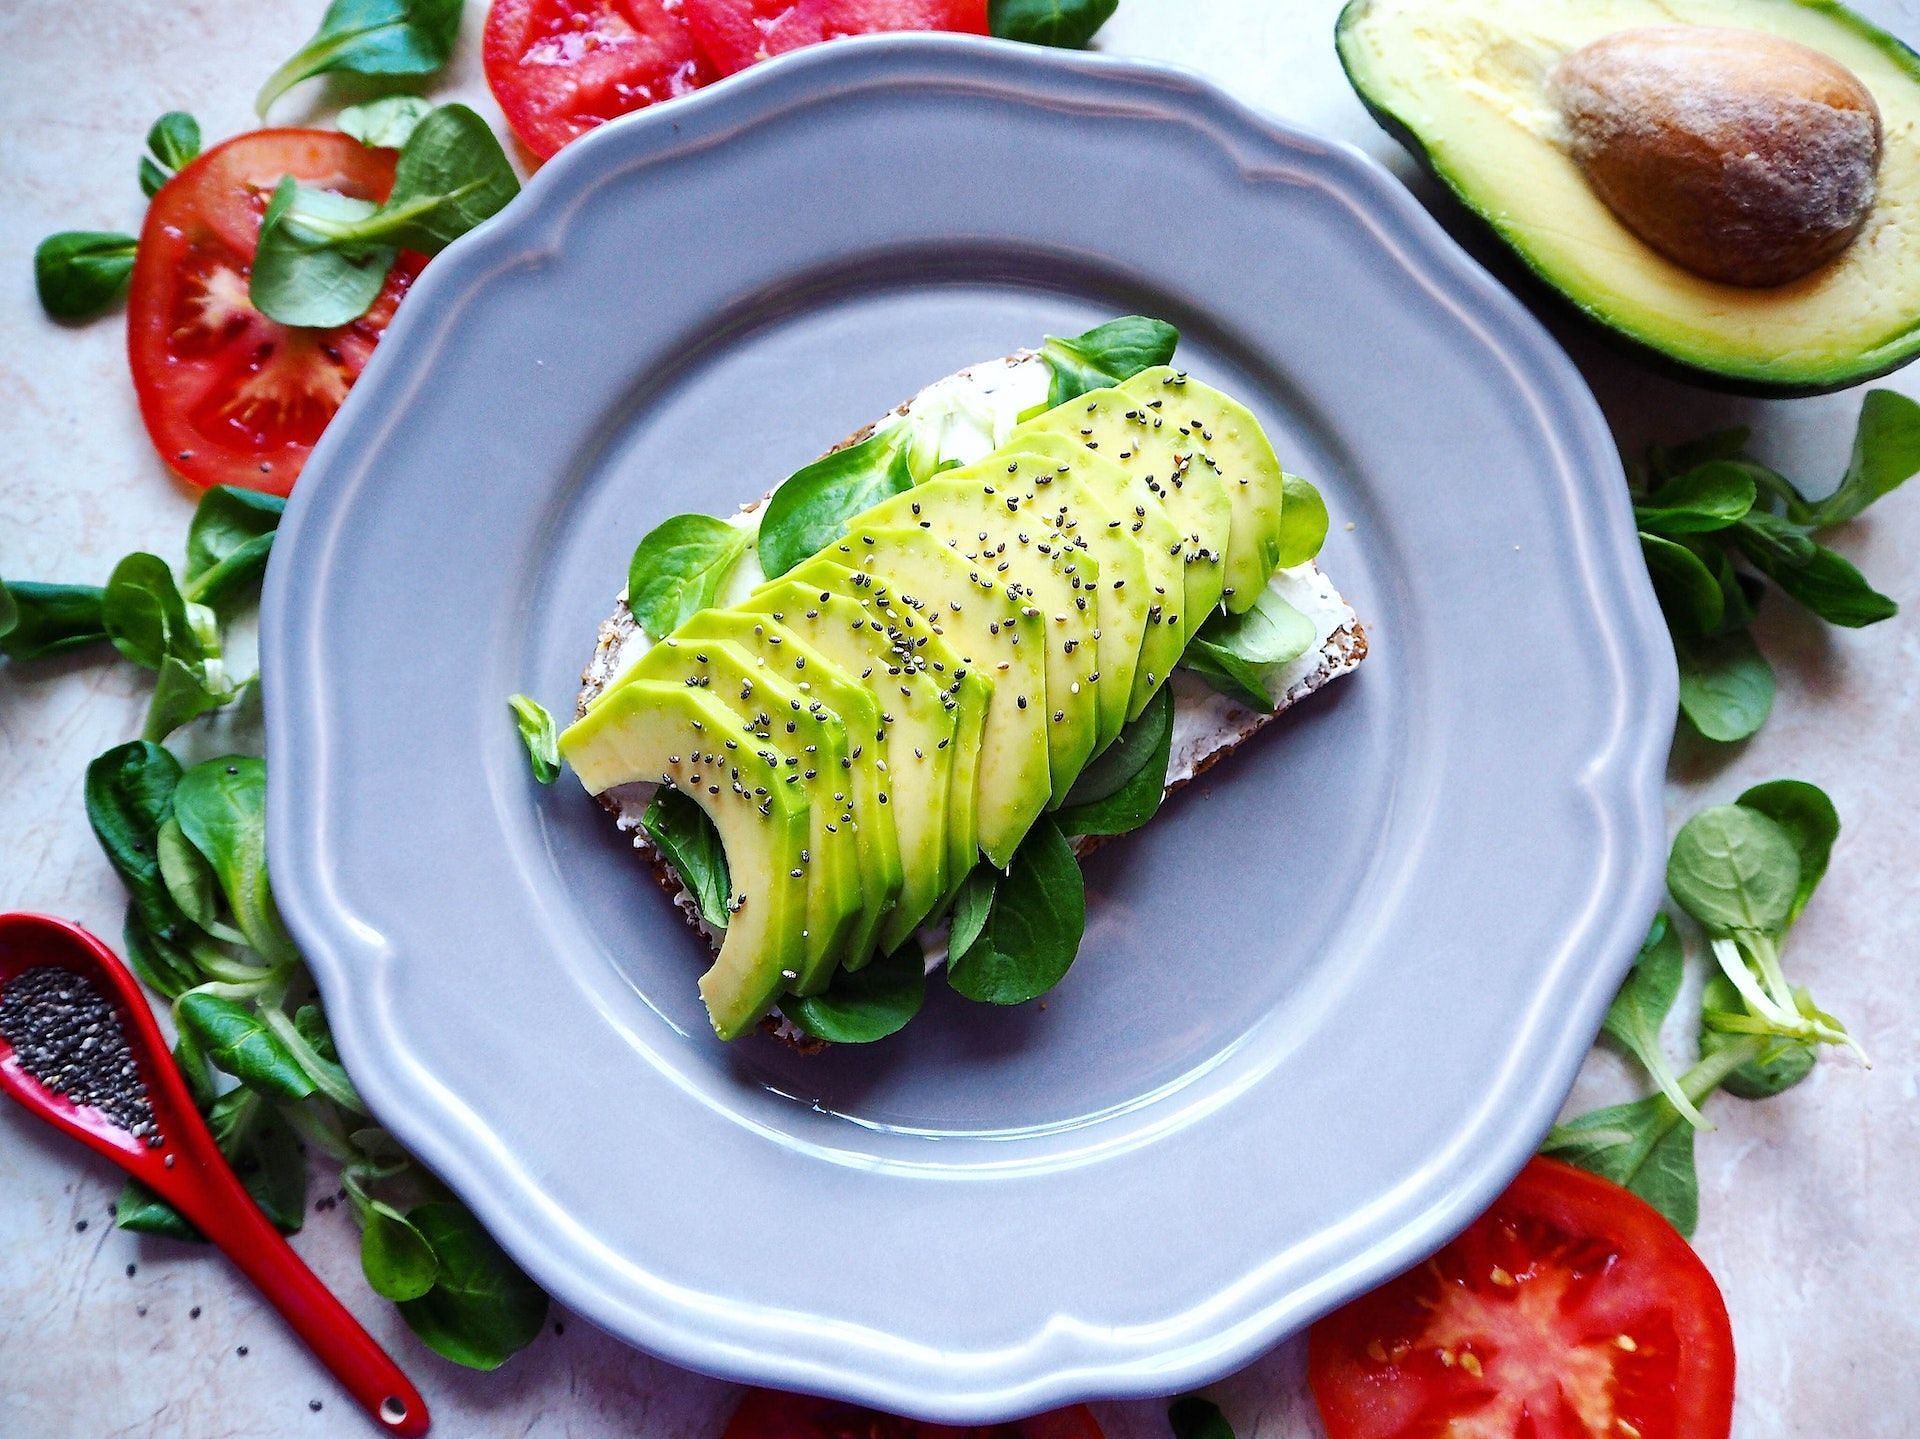 Are avocados good for you? (Image via Pexels/ Energepiccom)